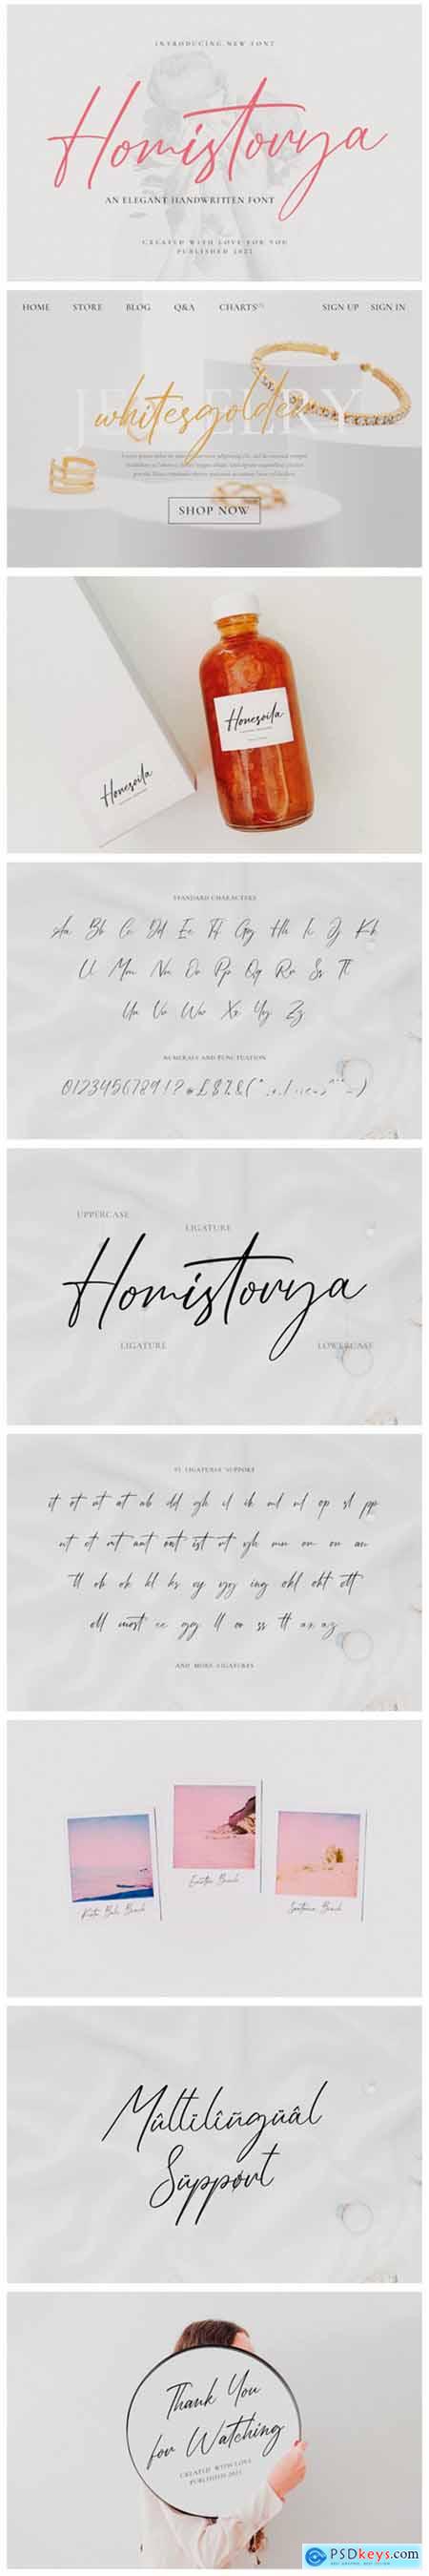 Homistorya Font